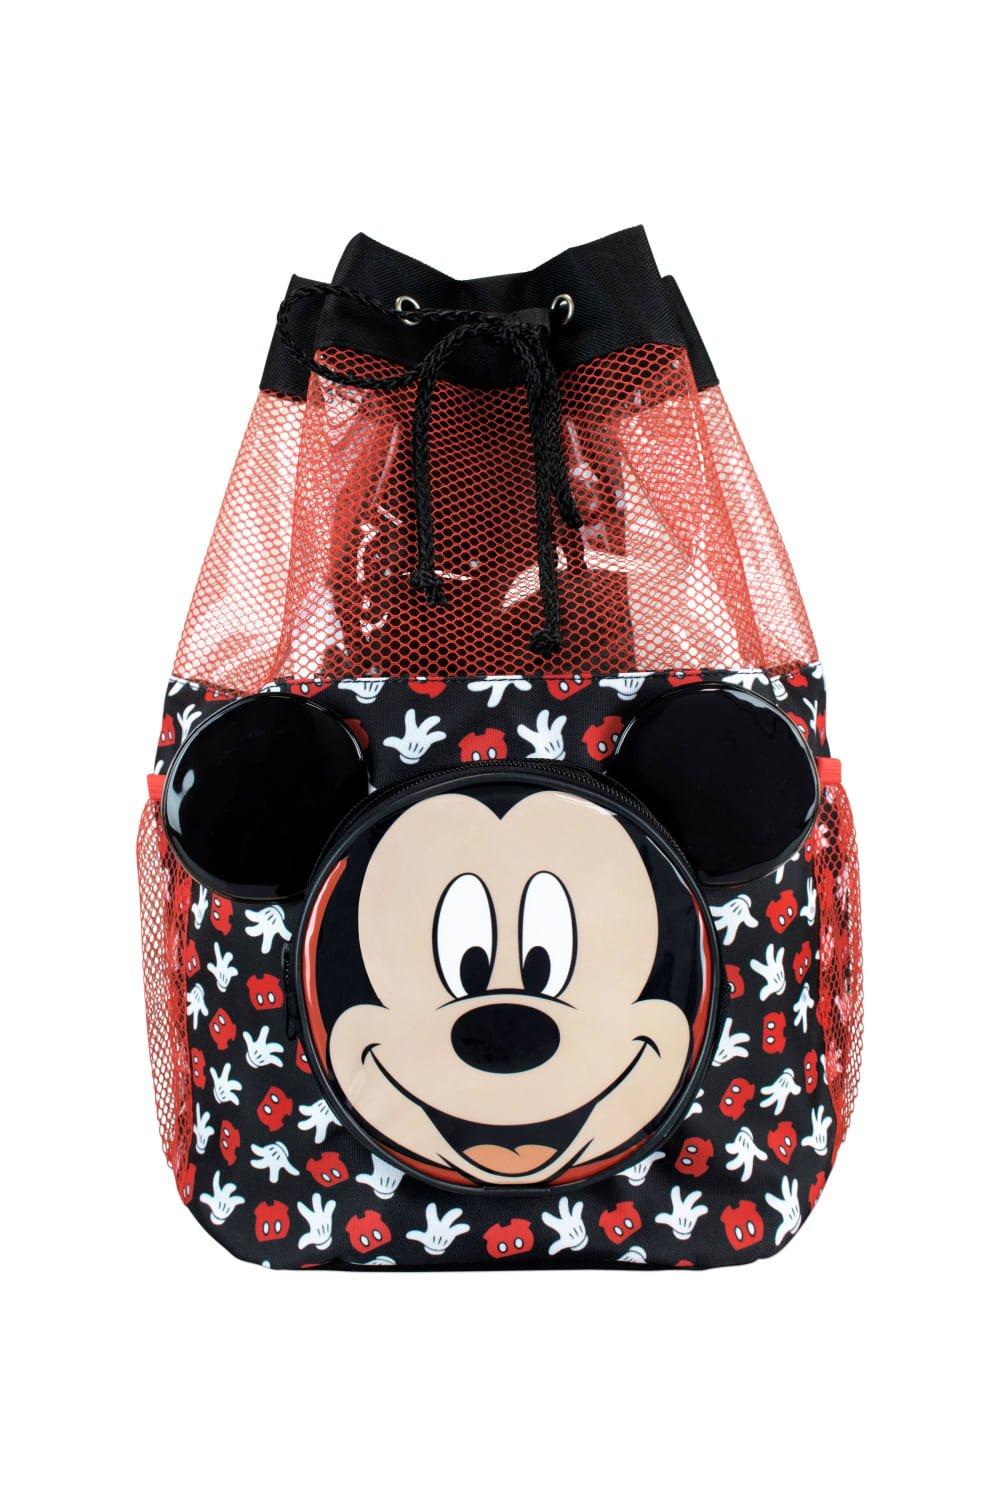 сумка для мальчиков disney легкий черный мультяшный рисунок микки мауса для мальчиков детский садовый маленький рюкзак на плечо Сумка для плавания с Микки Маусом Disney, черный